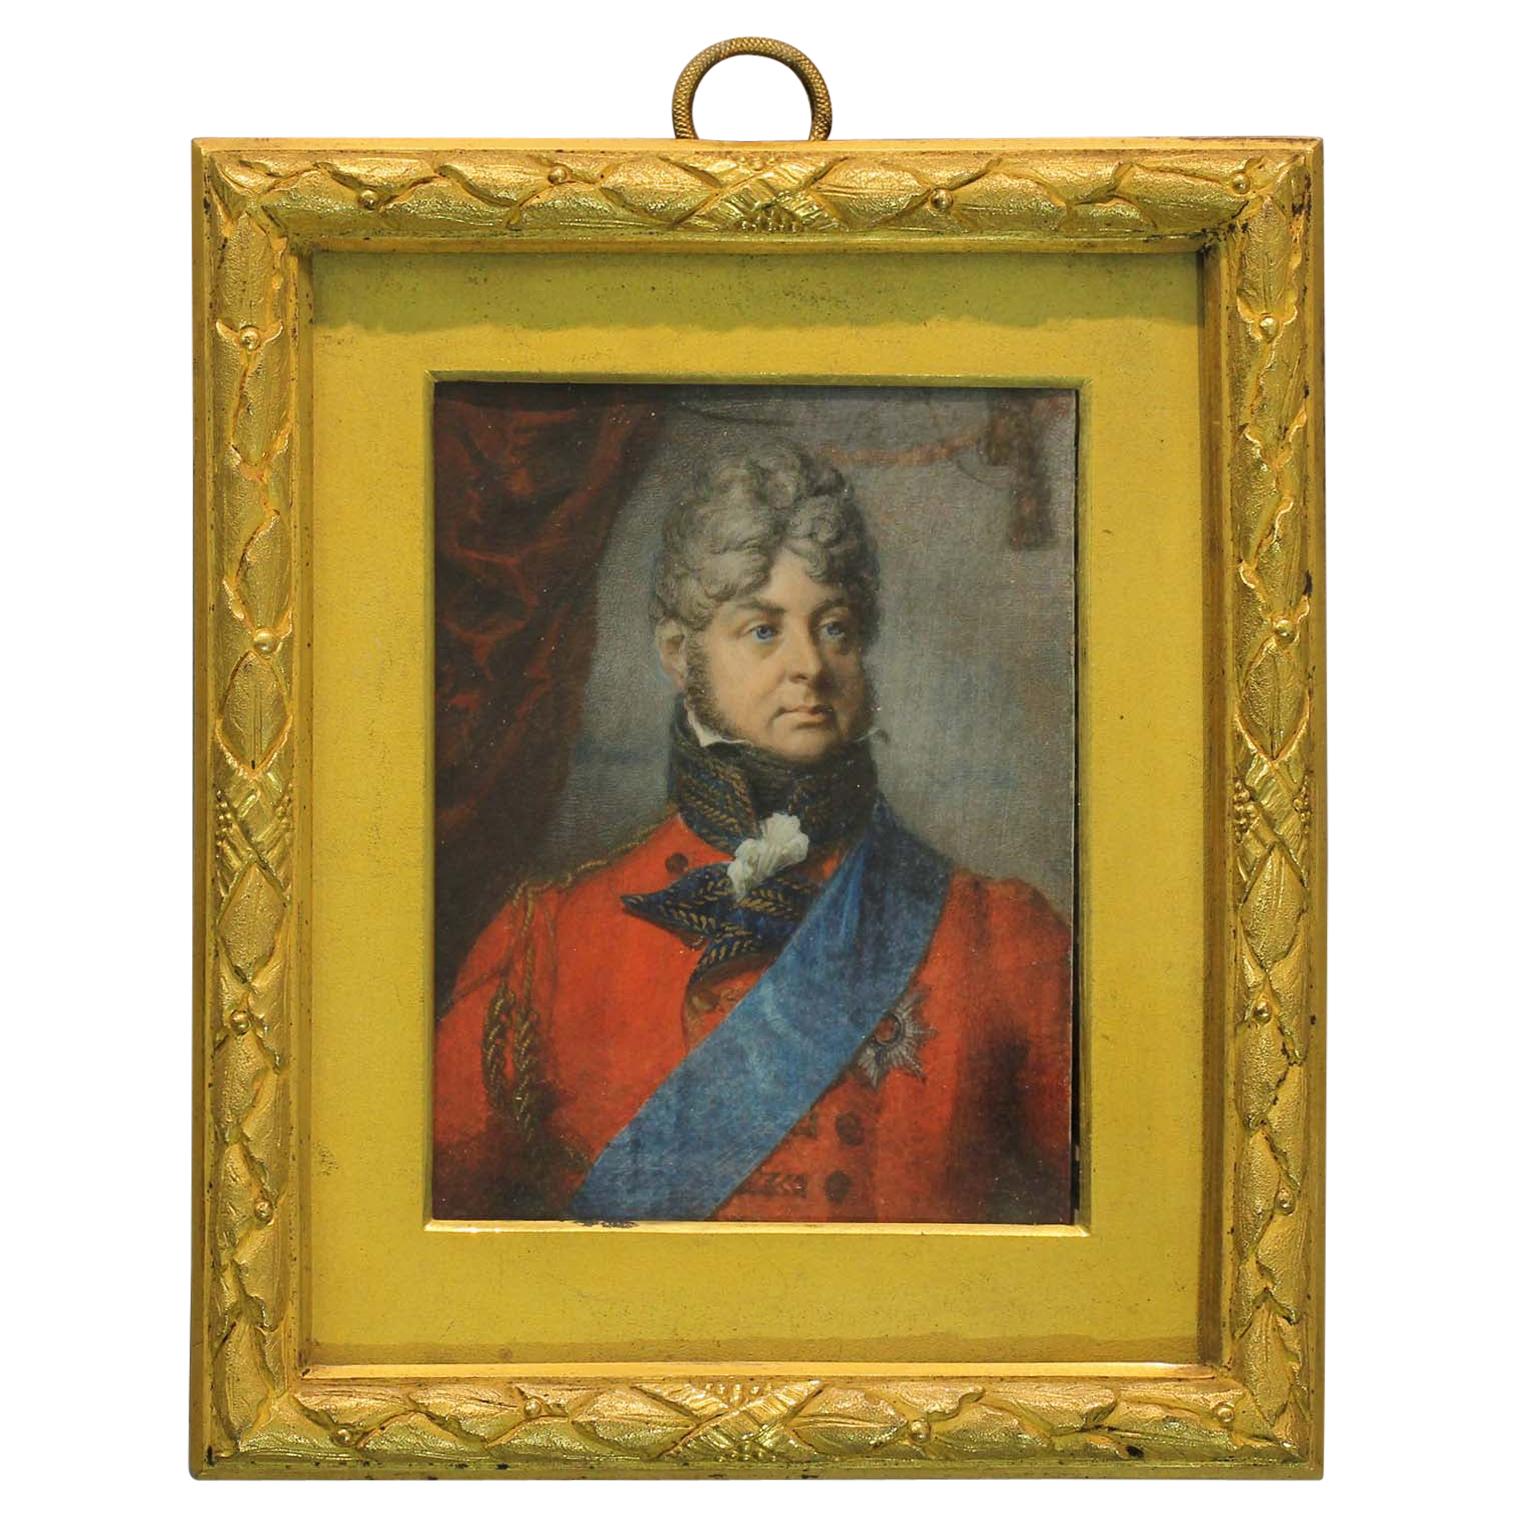 Englische Schulporträt-Miniatur des königlichen Gemäldes von König Georg IV. aus dem 19. Jahrhundert